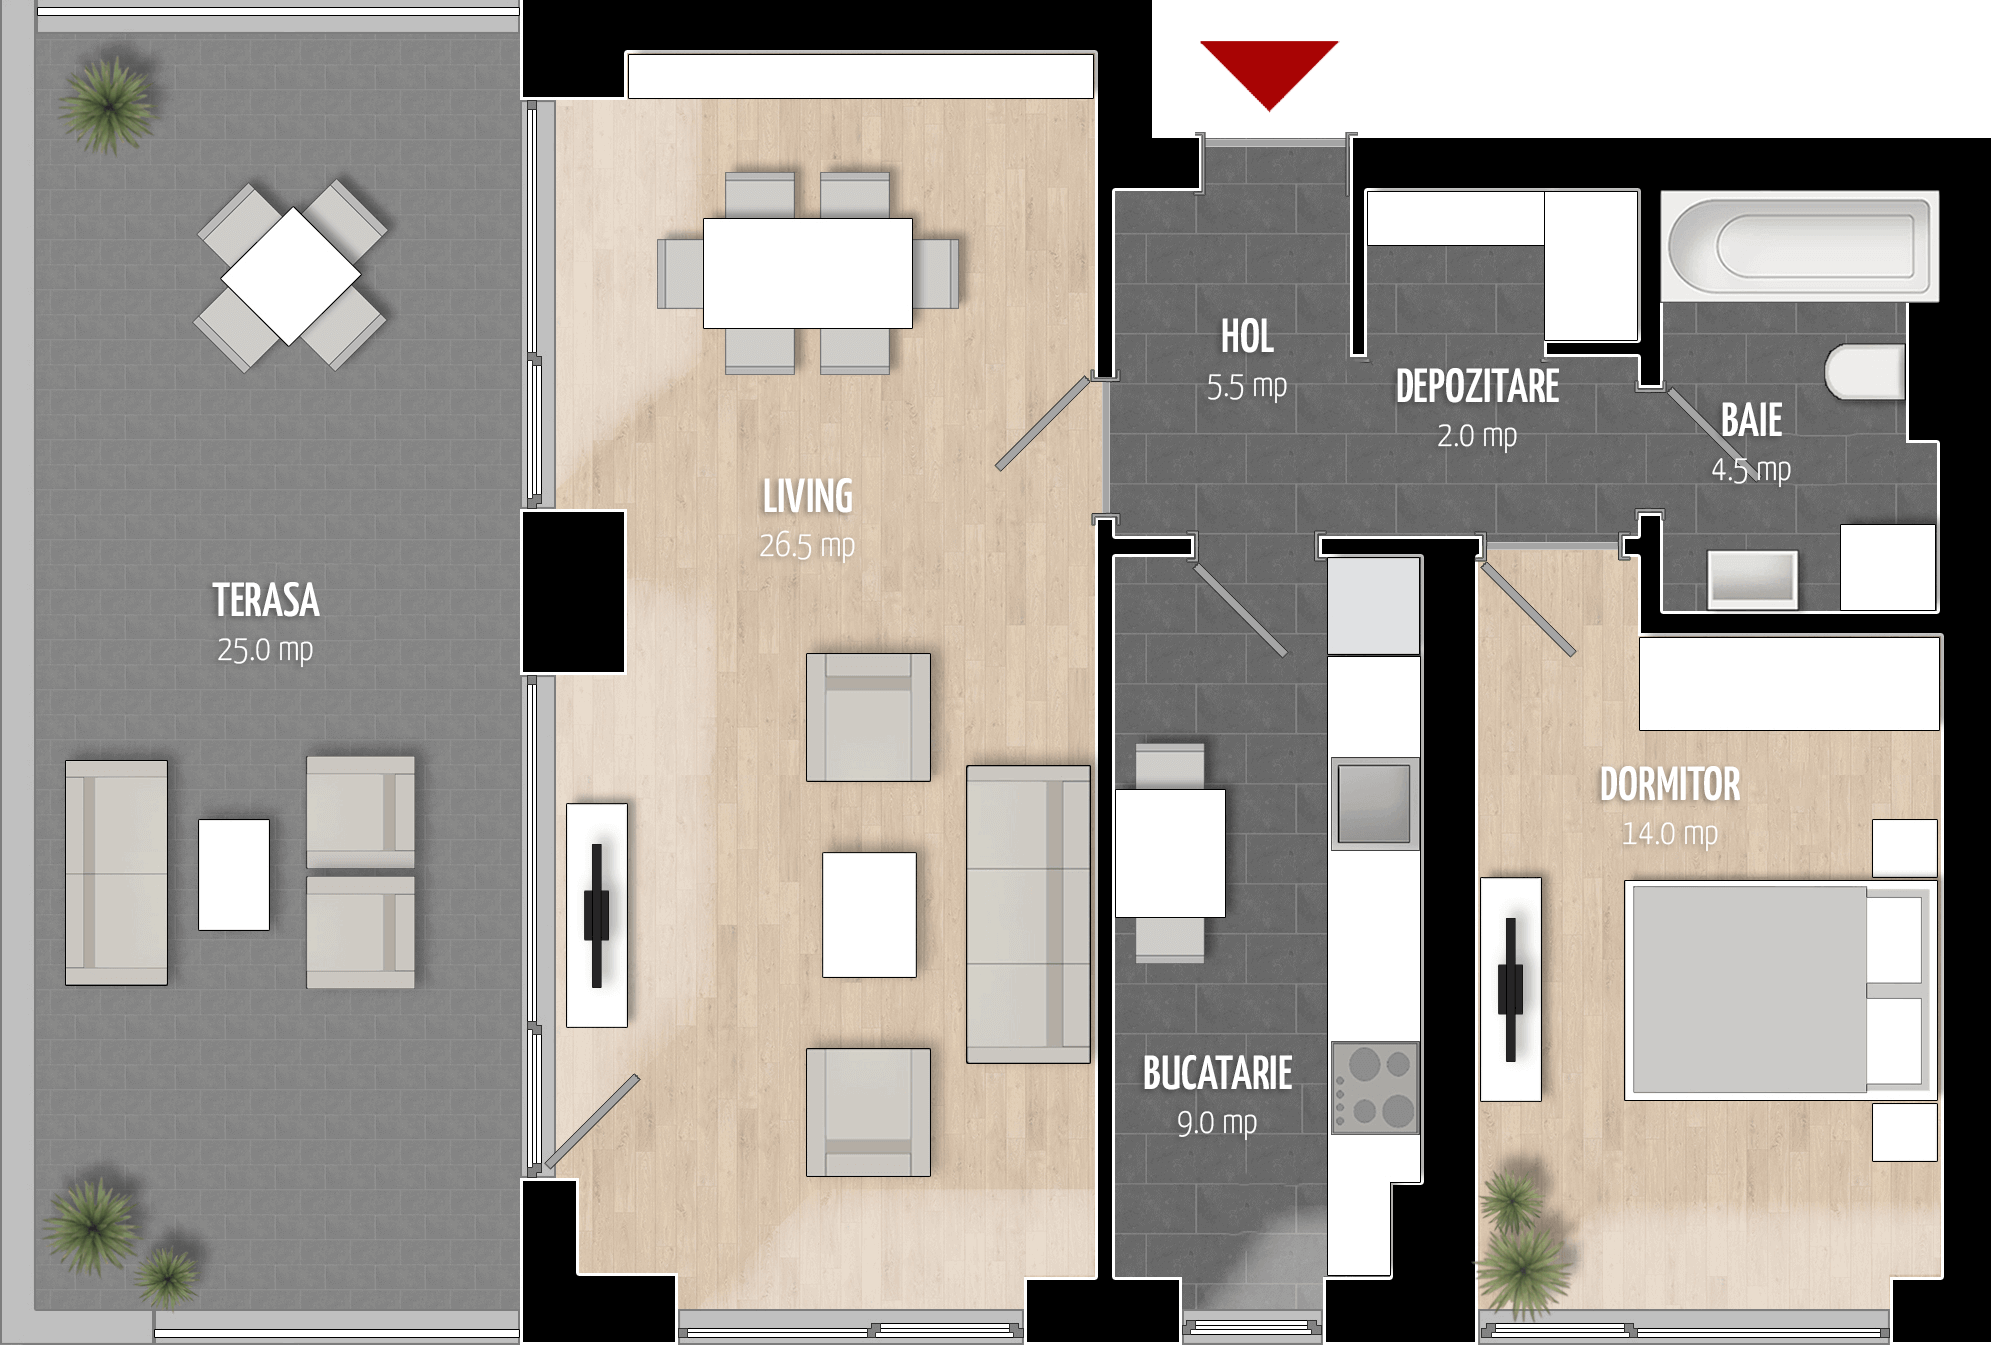  Apartament 1002, Tip de apartament 2C cu 2 camere 